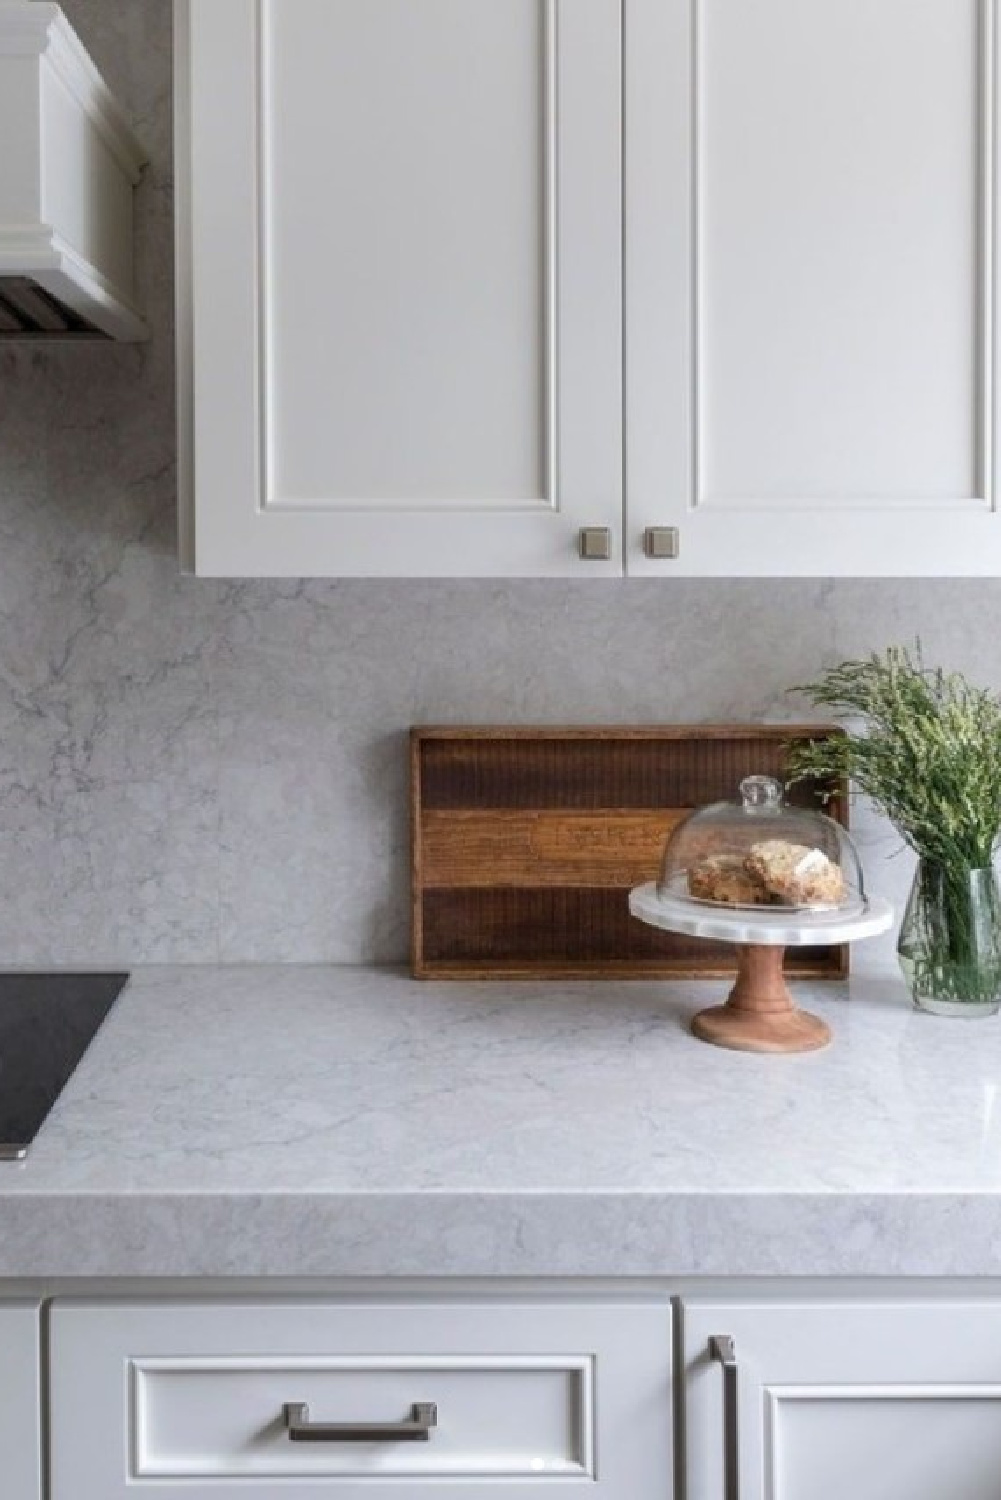 Aura quartz (Viatera) kitchen countertops with white cabinets. #auraquartz #viaterausa